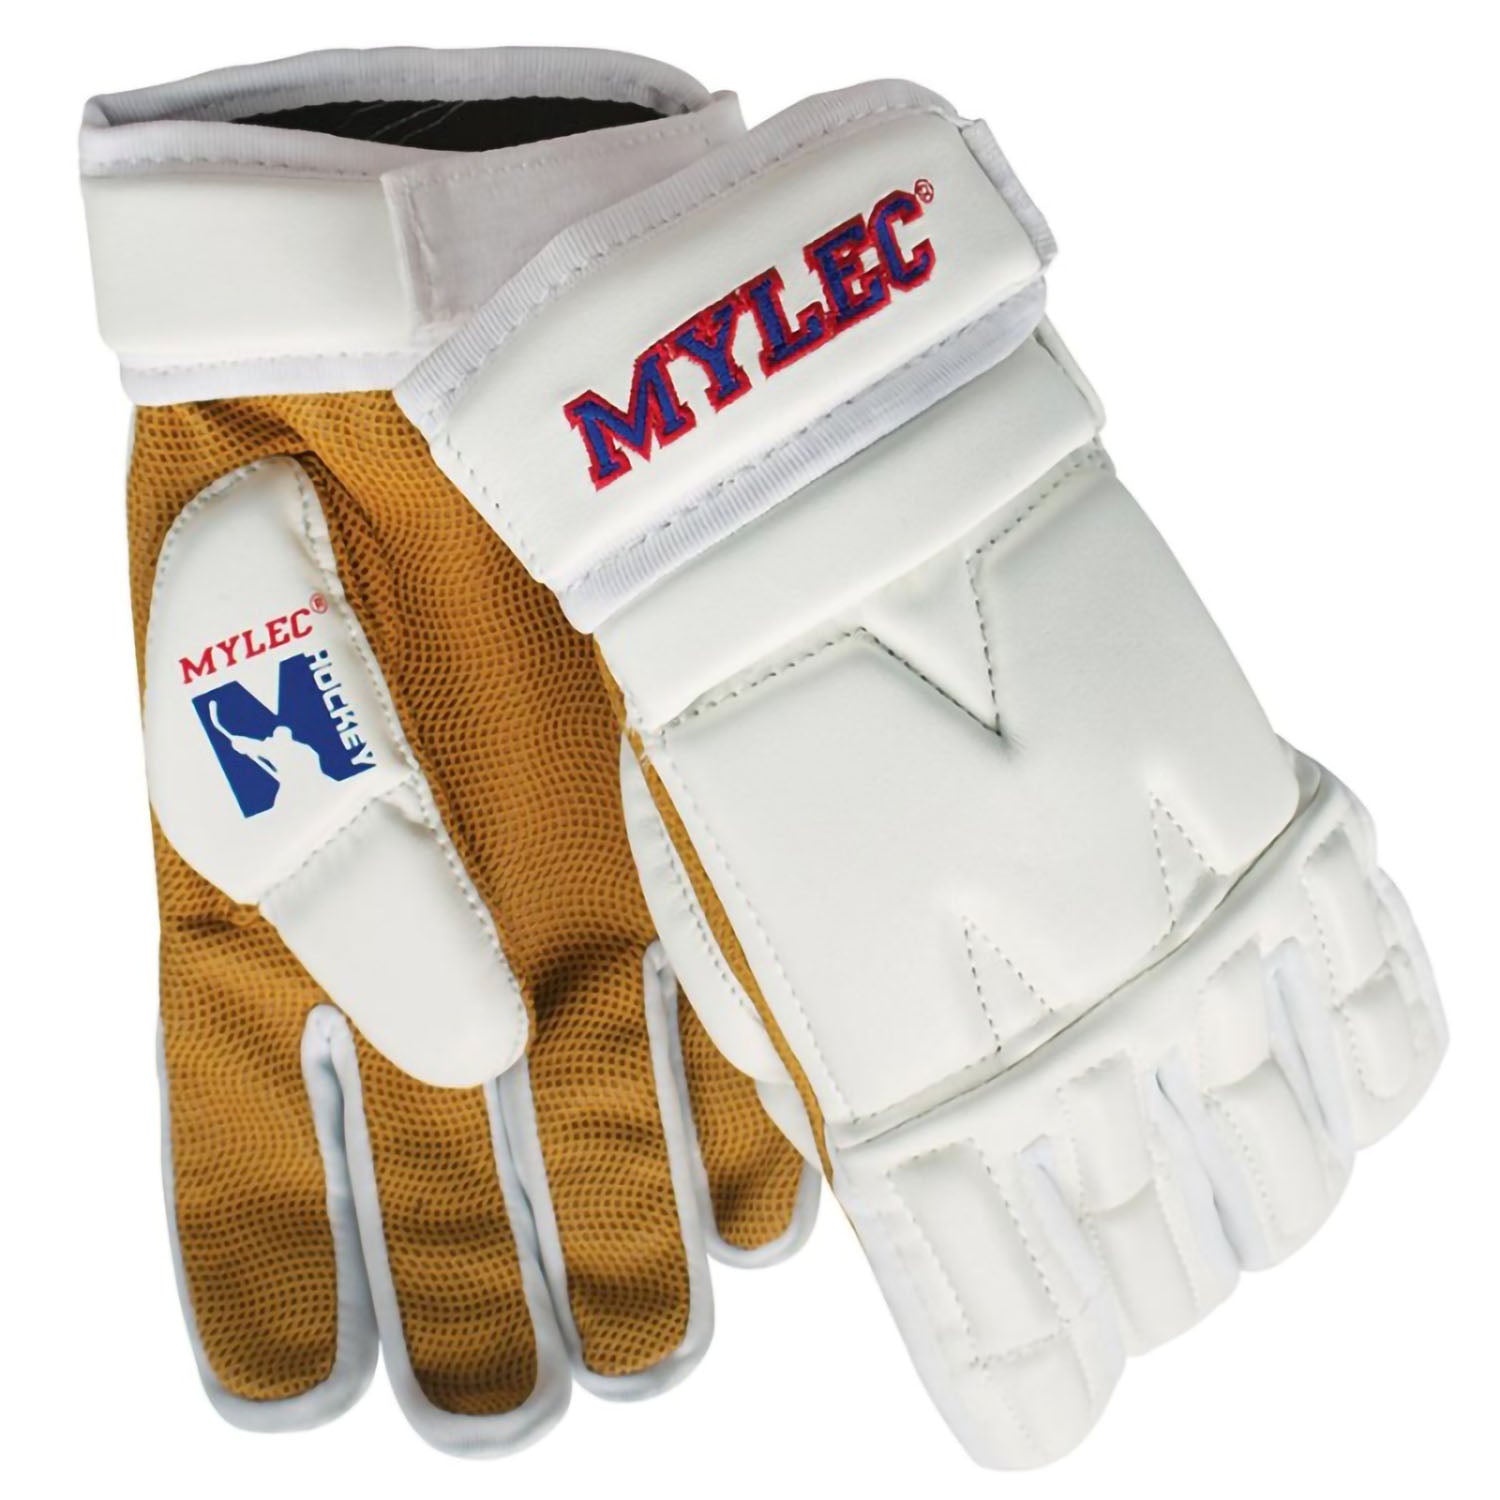 Mylec MK3 9" / Small Hockey, Dek Hockey, Street Hockey Player Gloves - White - Pro-Distributing